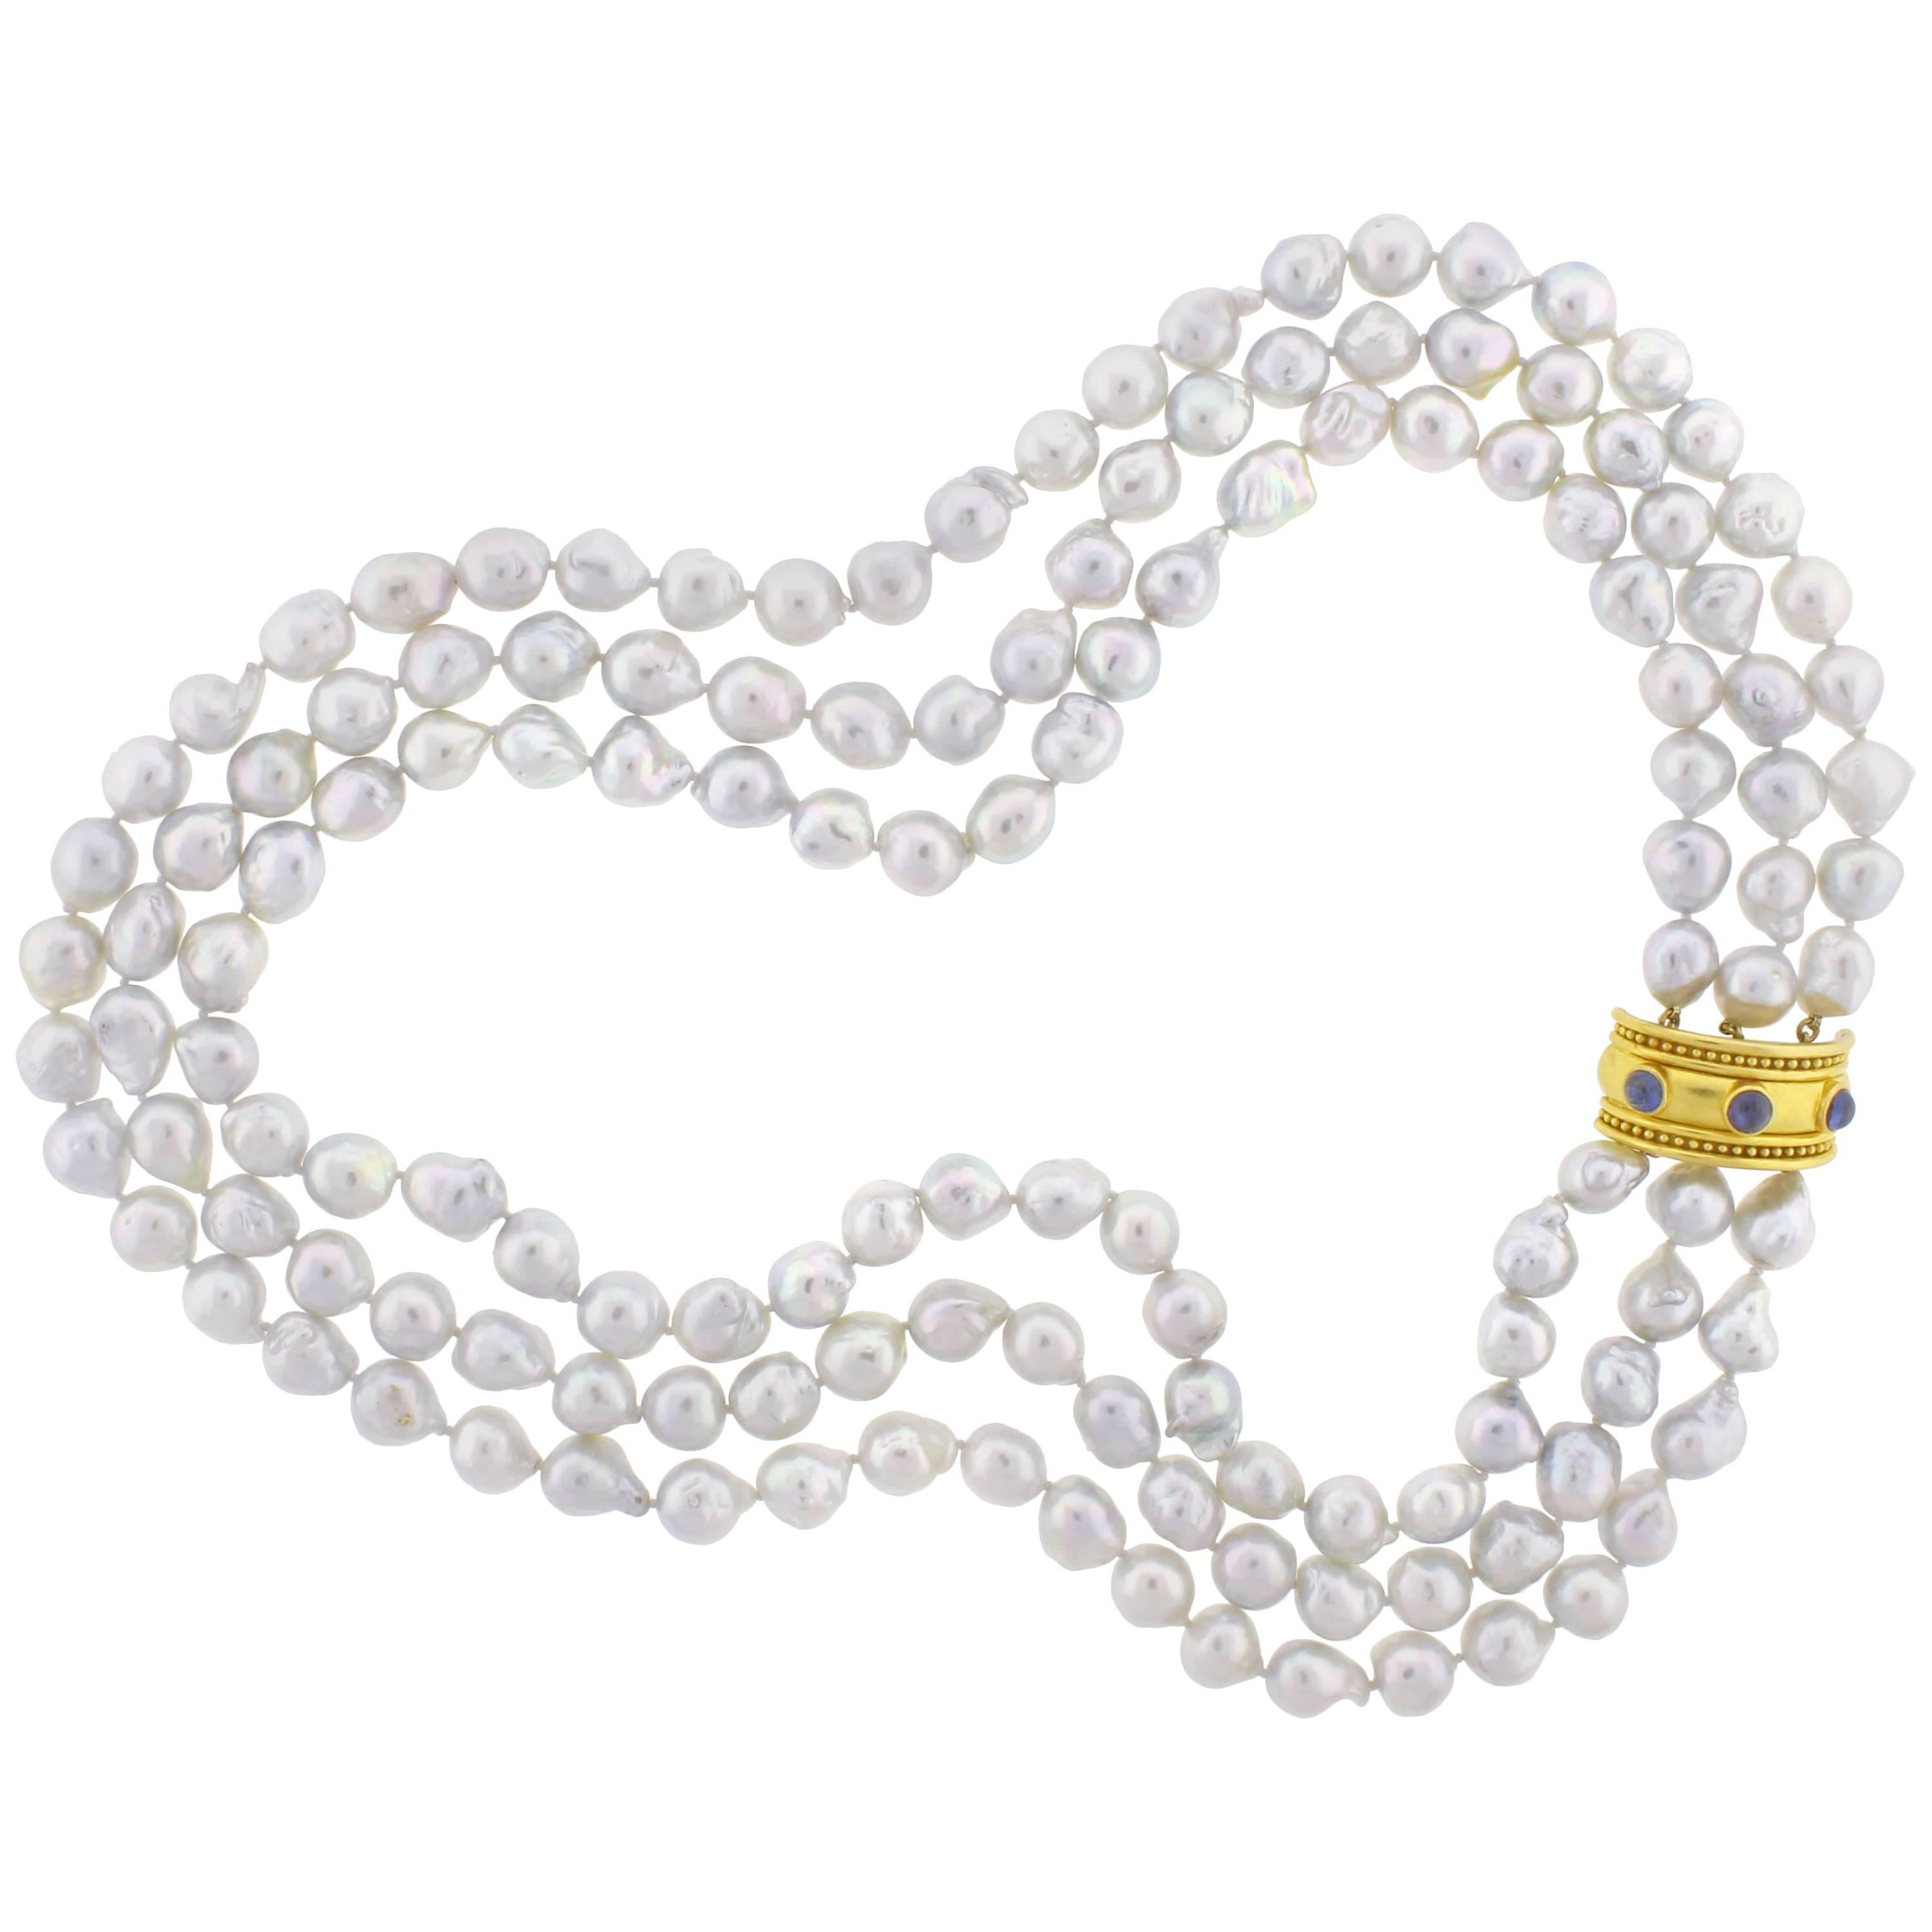 Elizabeth Locke Baroque Pearl and Gold Necklace